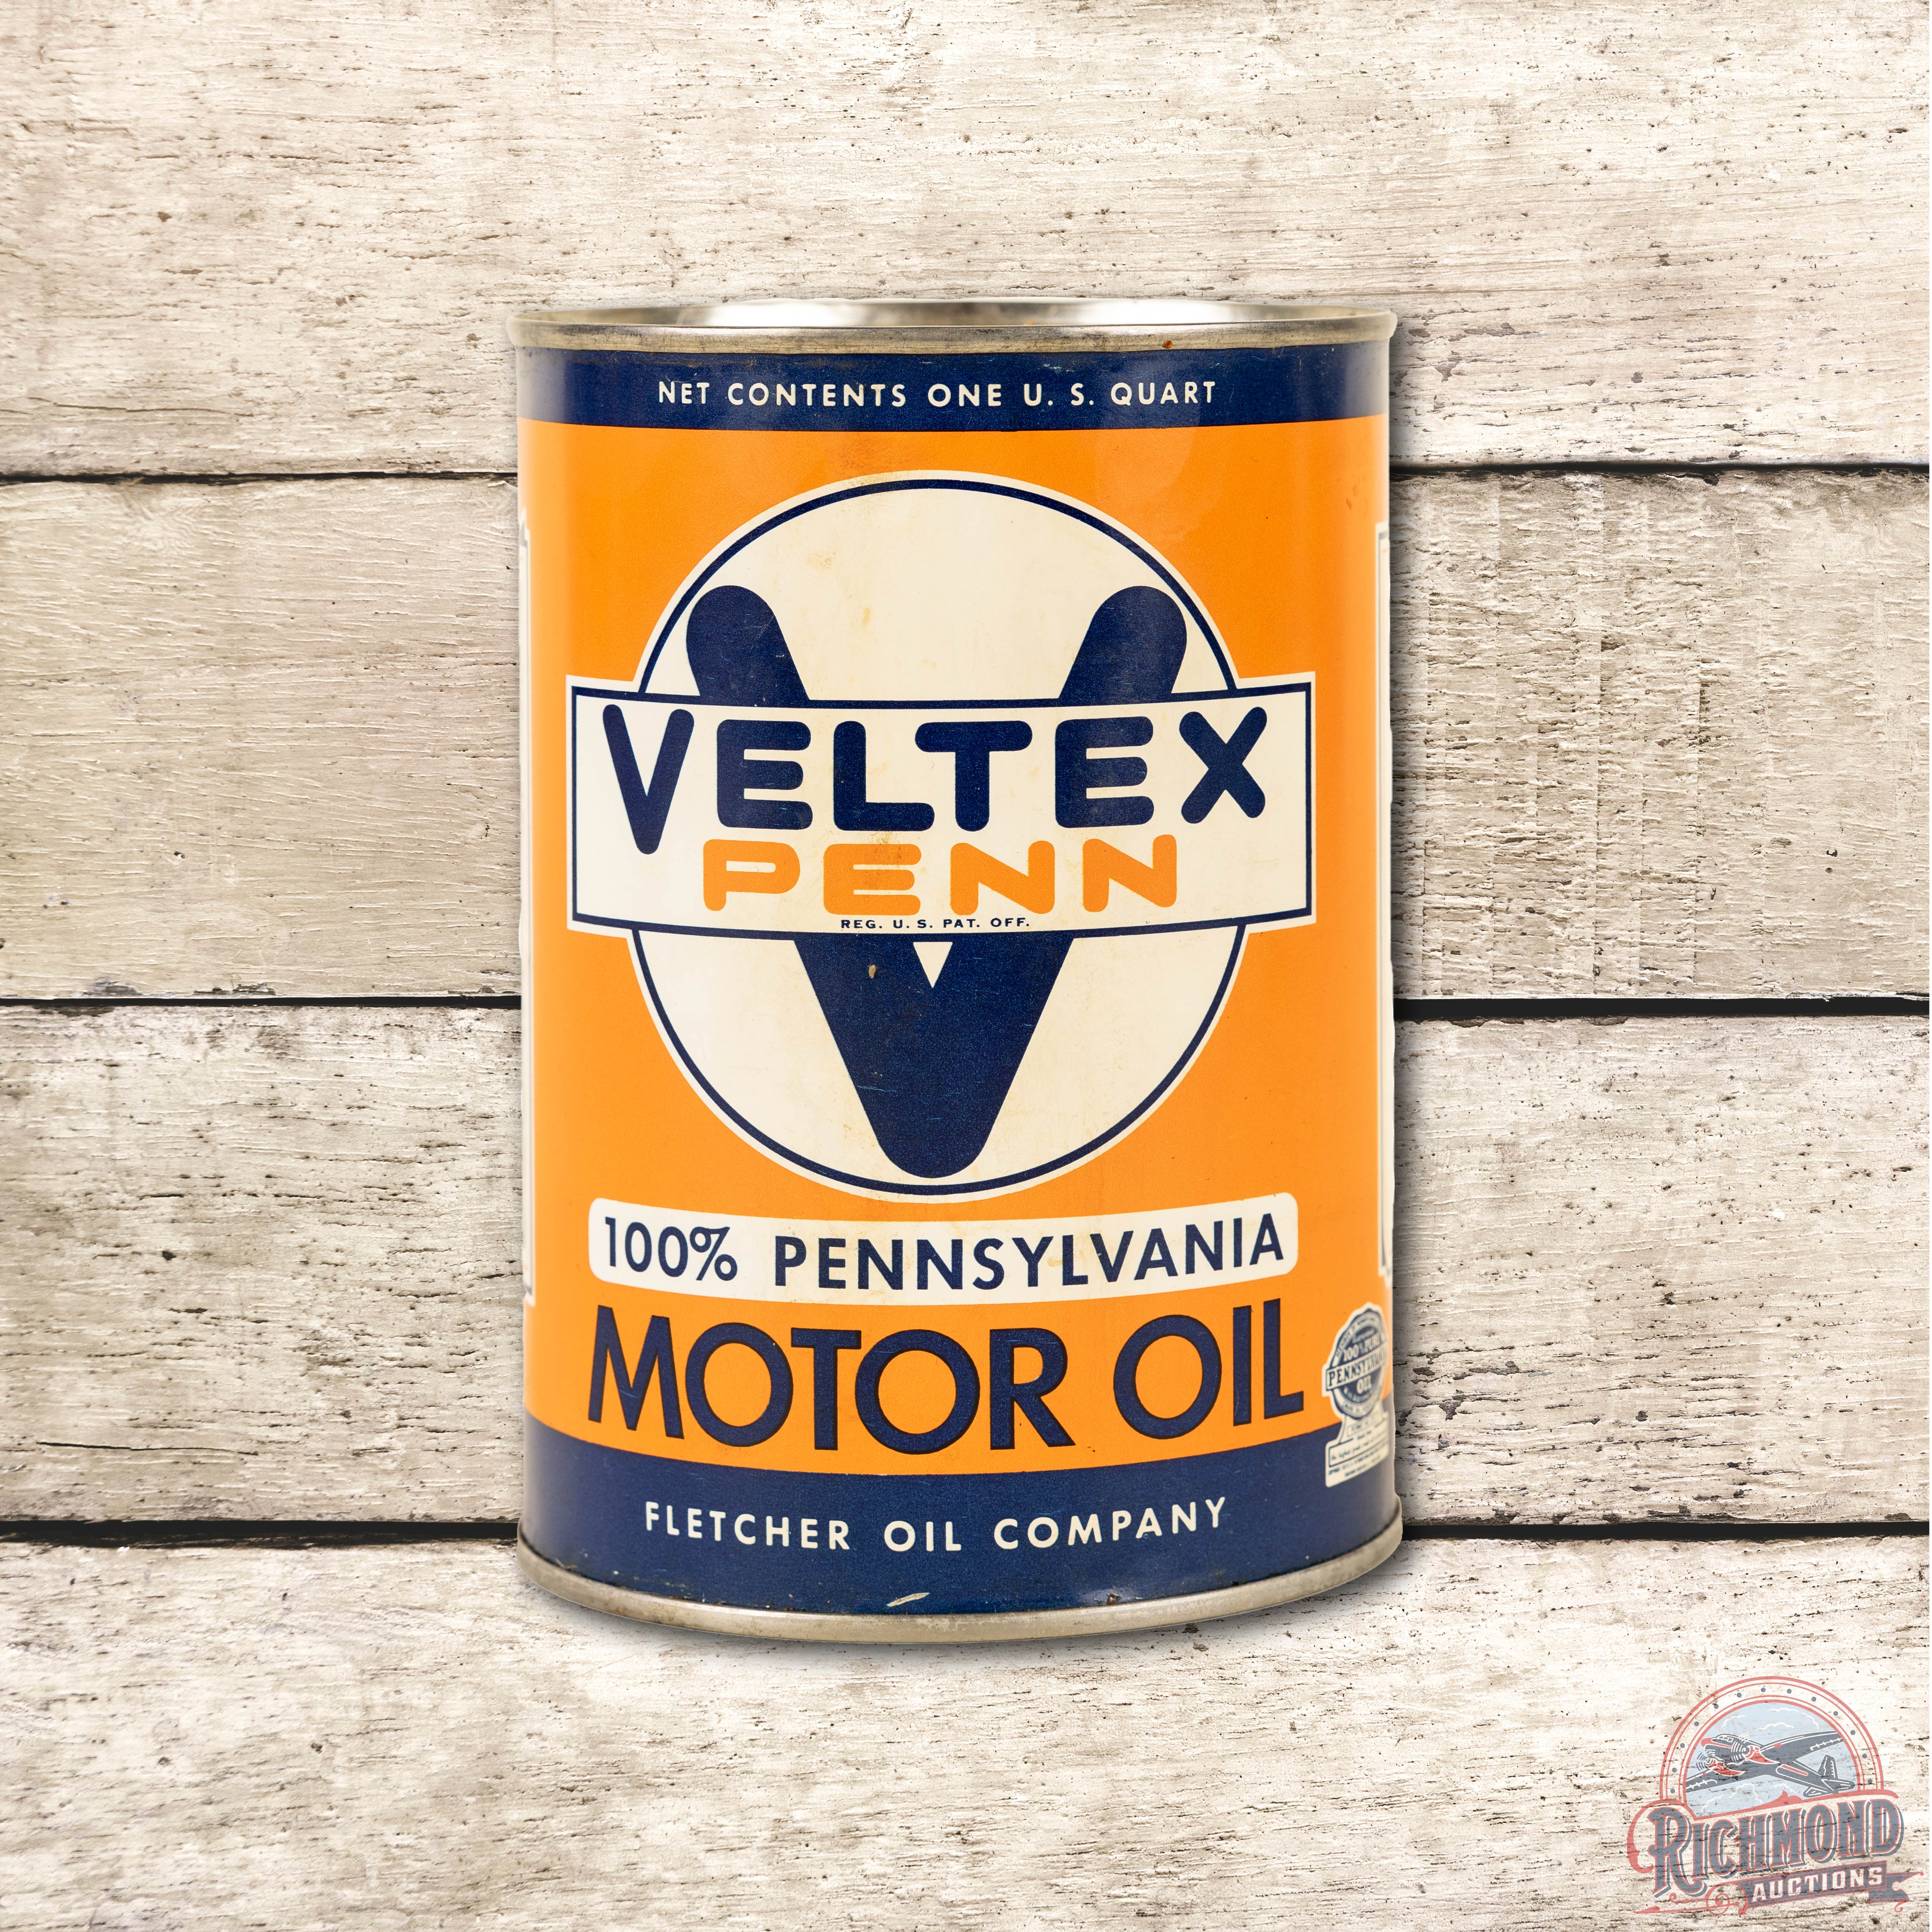 Veltex Penn 100% Pure Pennsylvania Motor Oil Full One Quart Can TAC 8.75